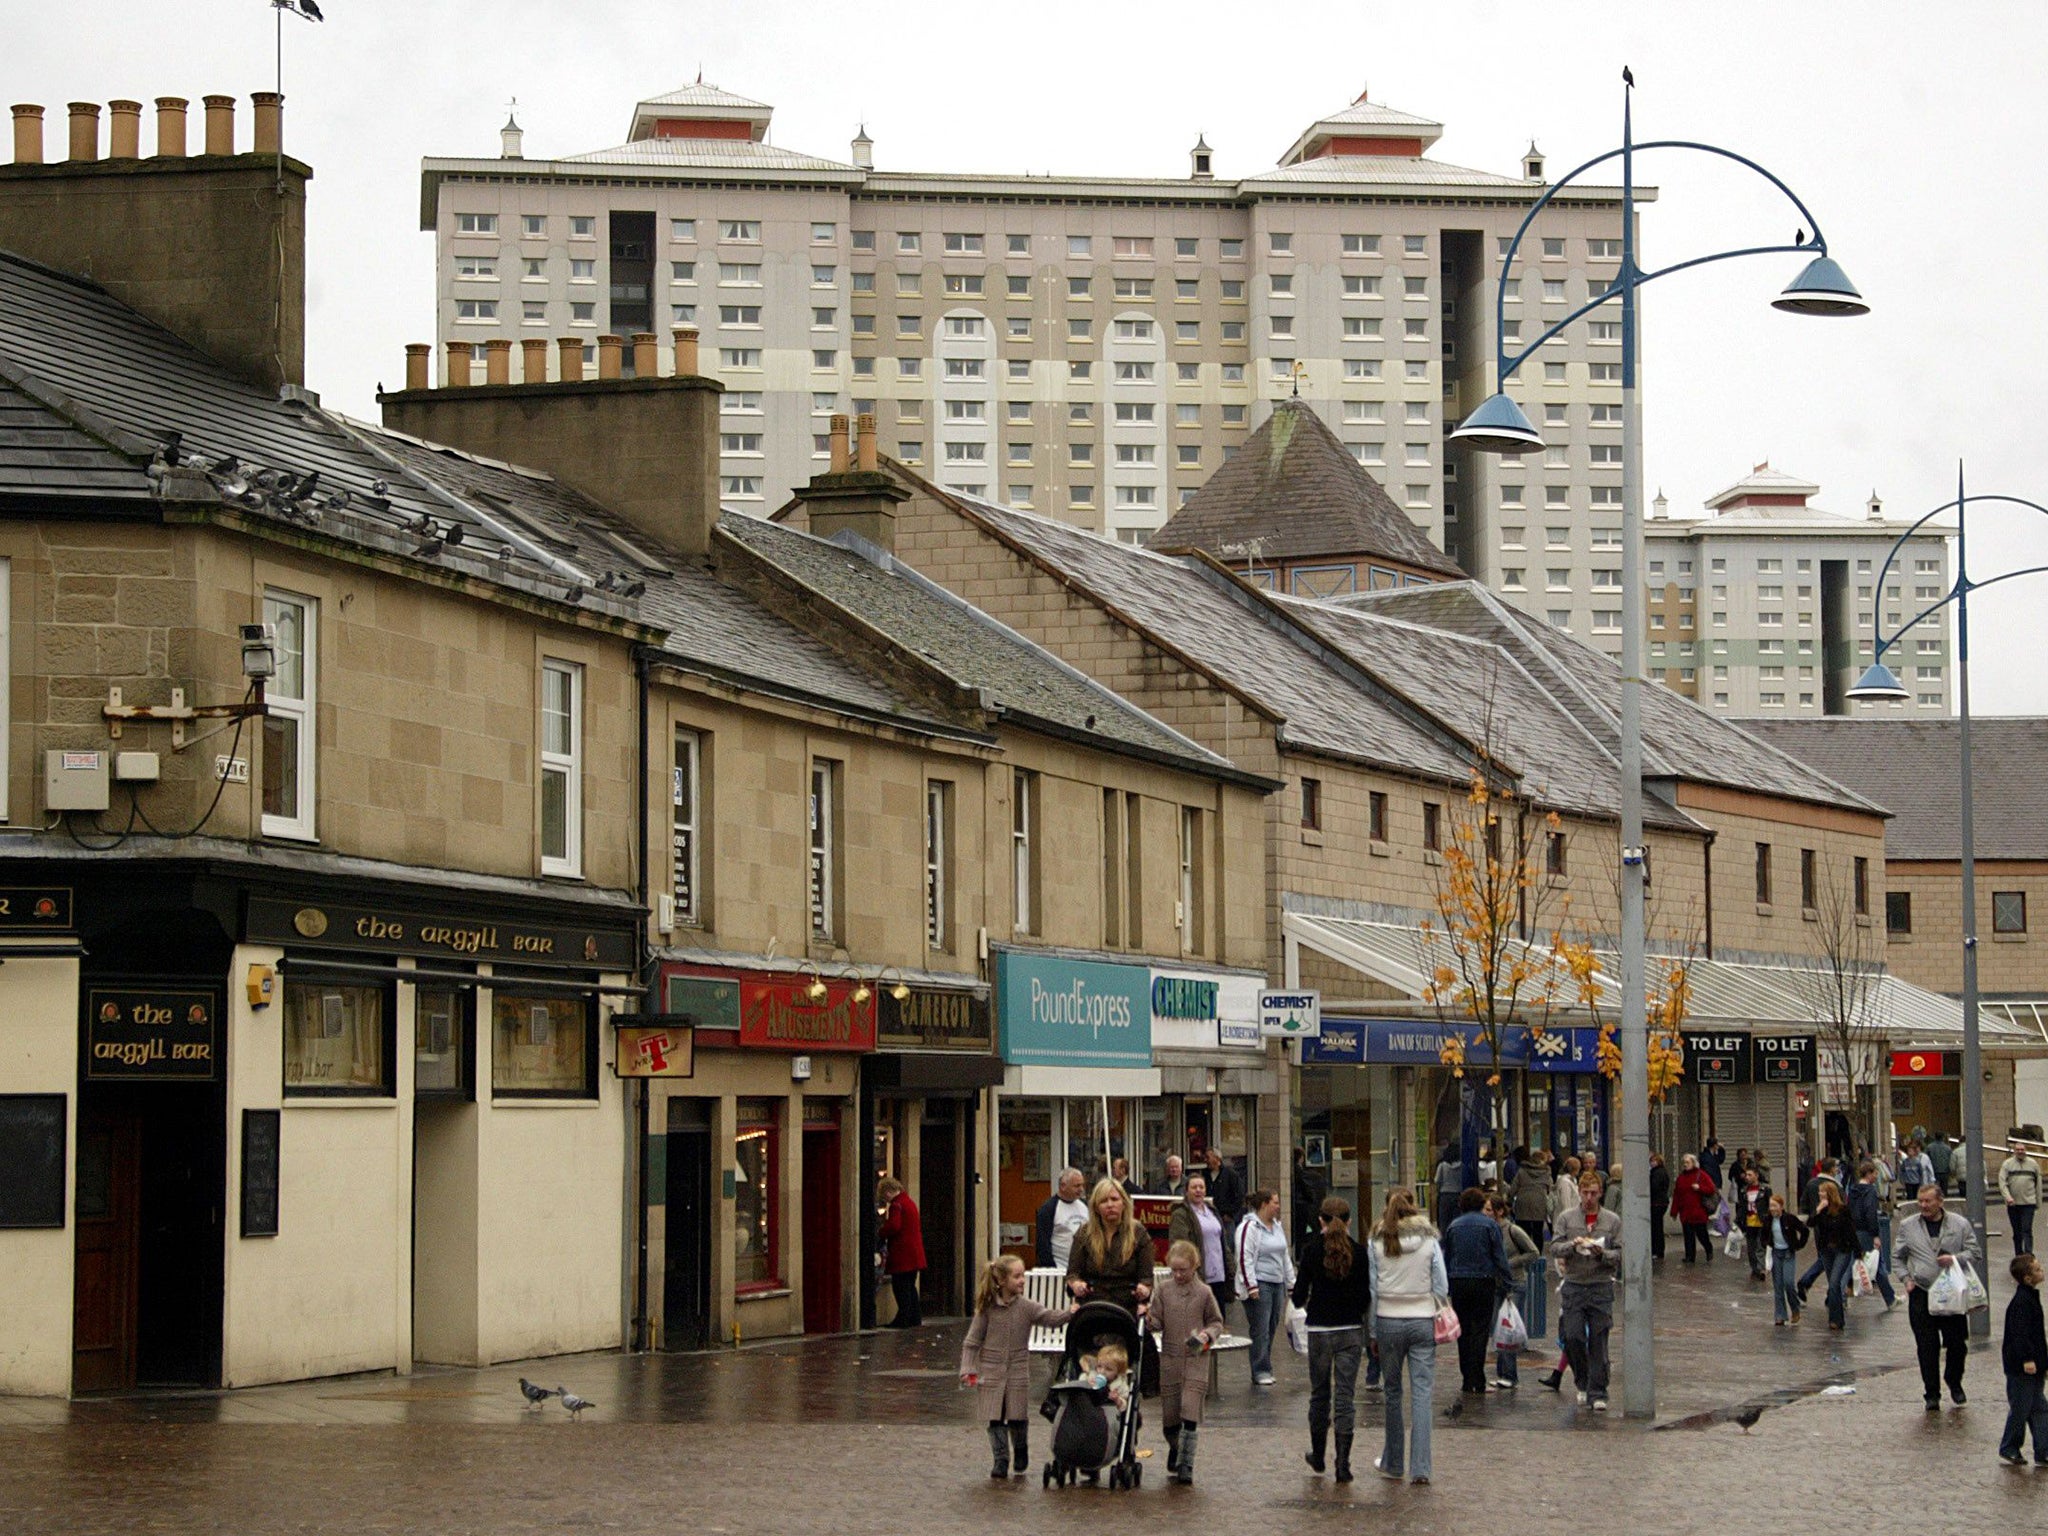 Coatbridge town centre in North Lanarkshire